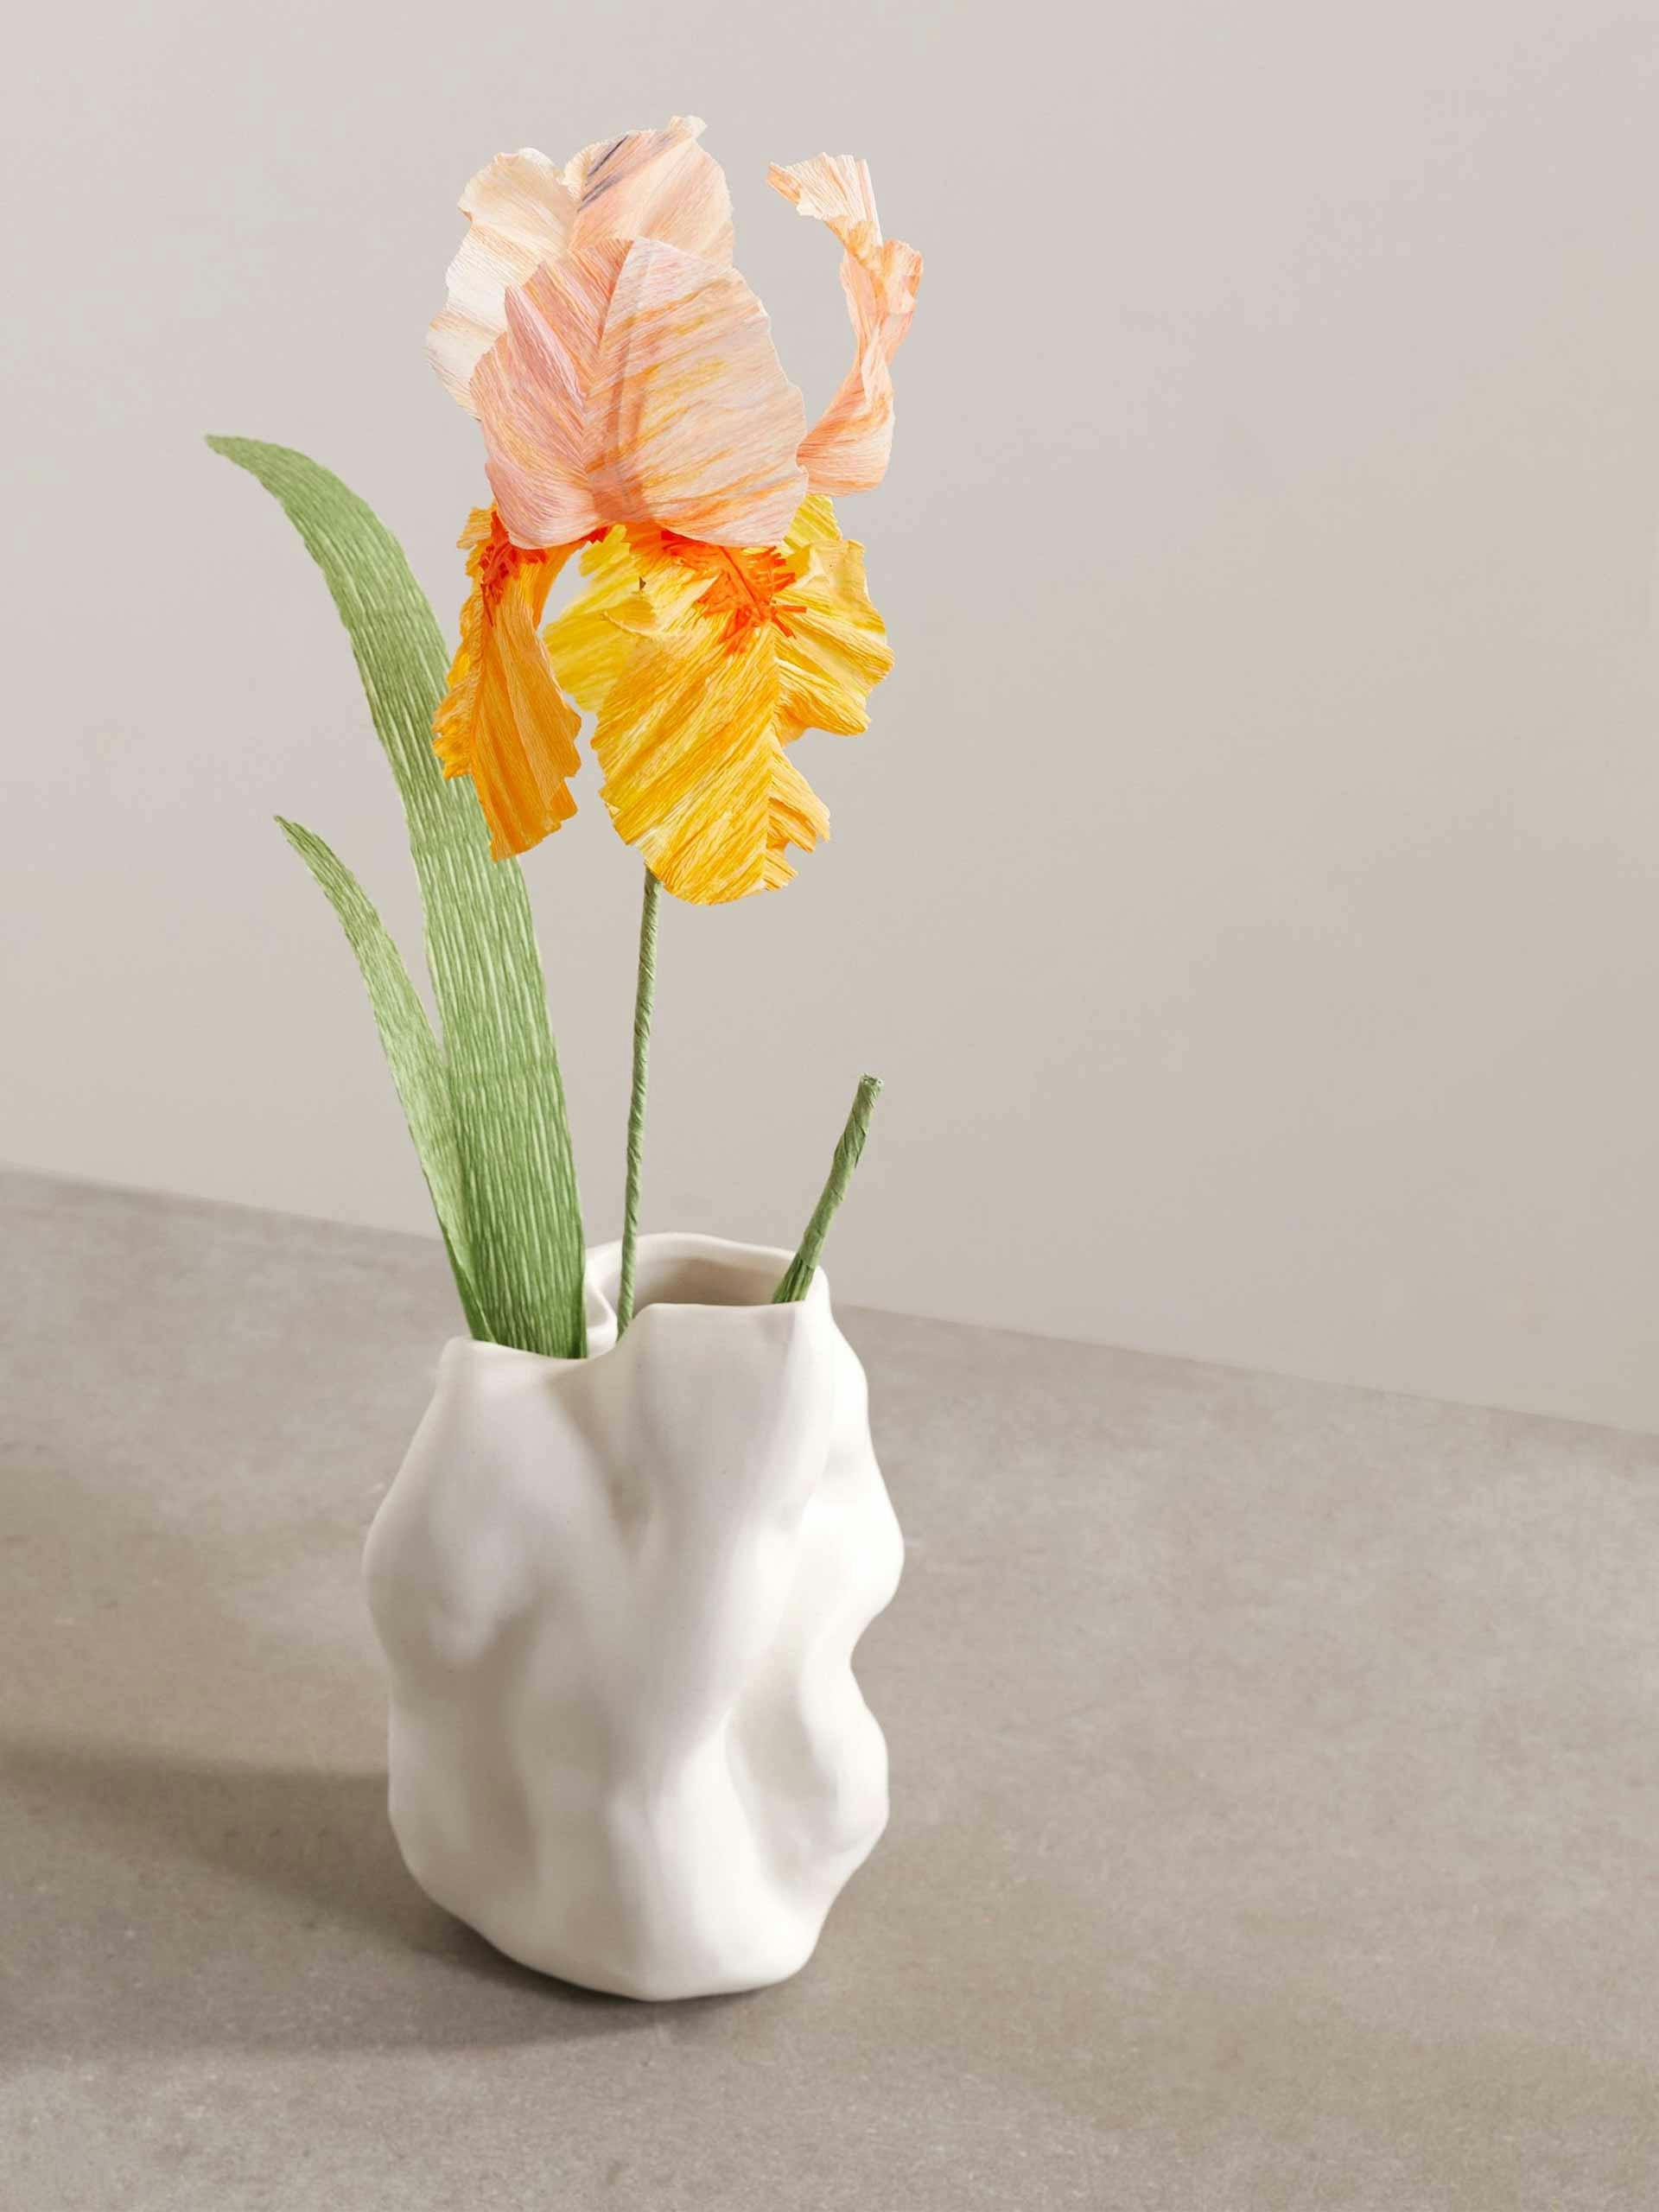 Iris ceramic vase with paper flower